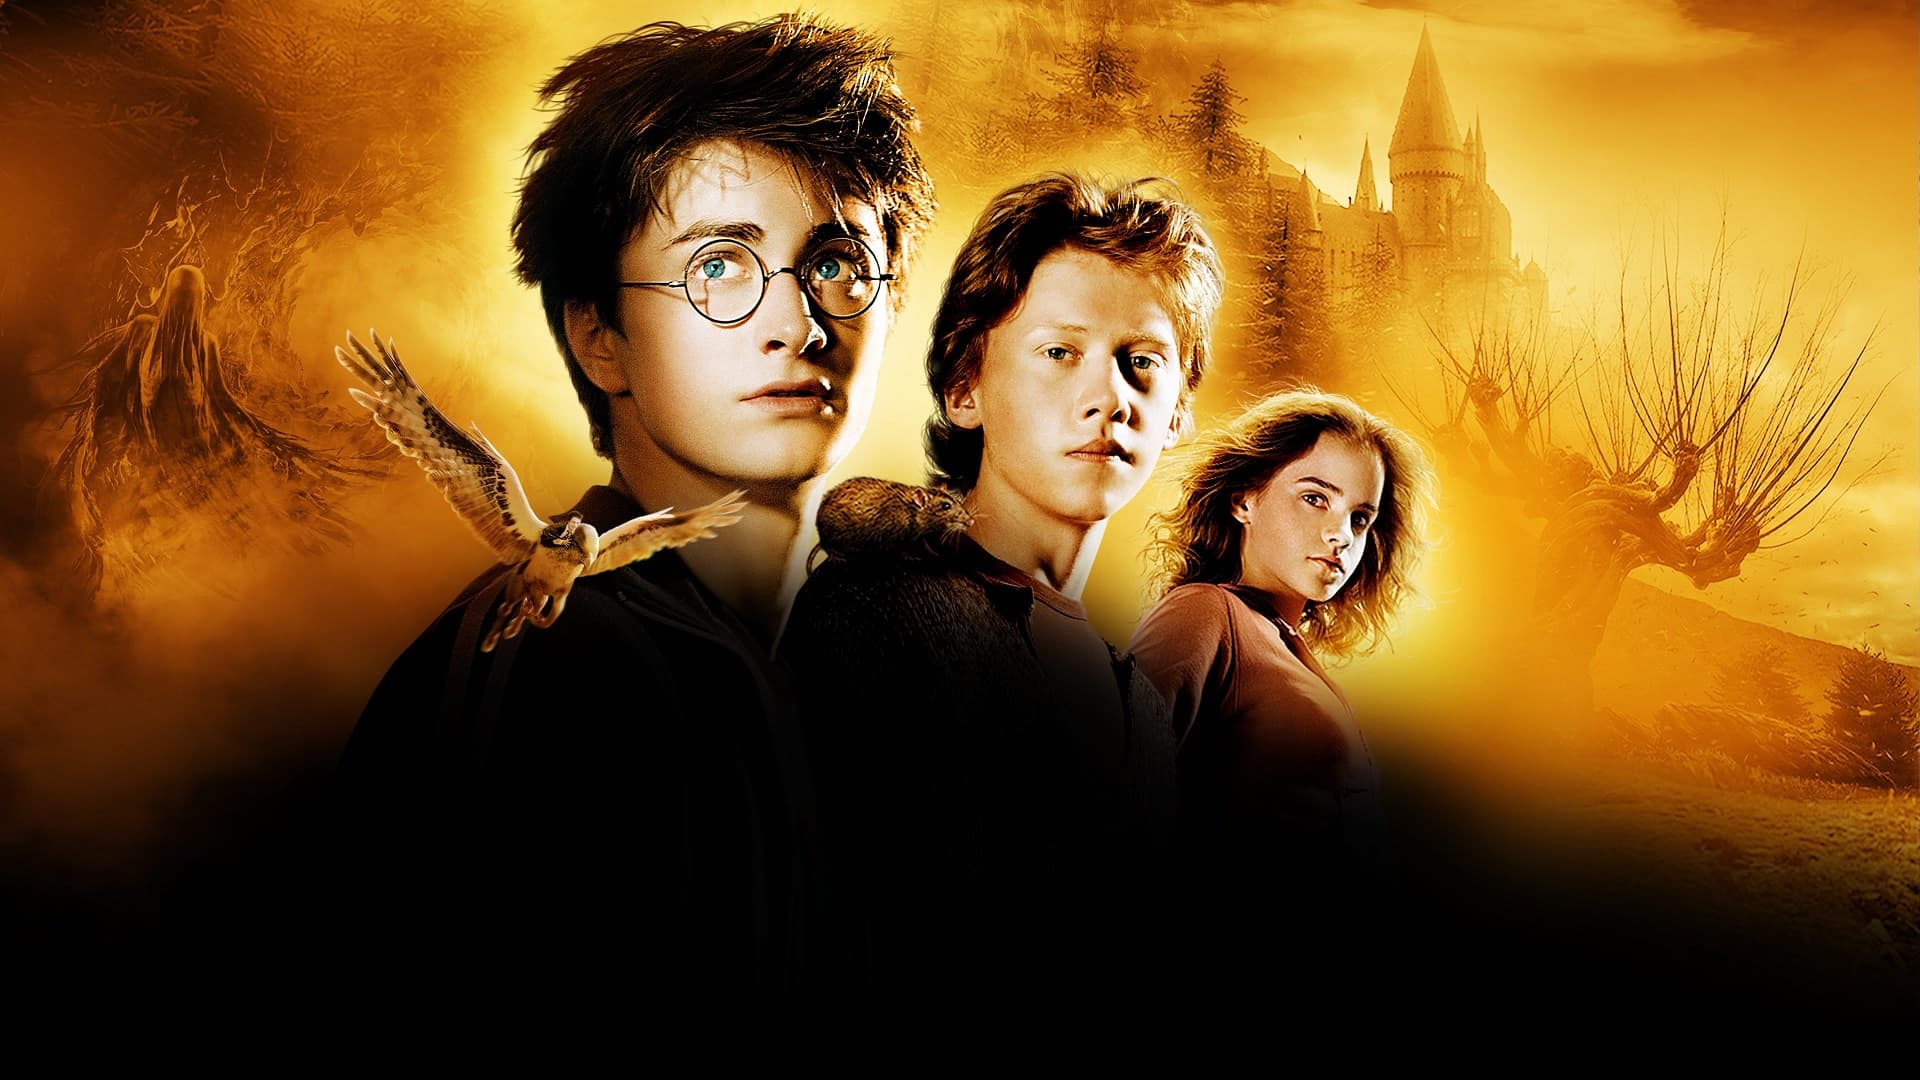 Harry Potter Azkaban 1